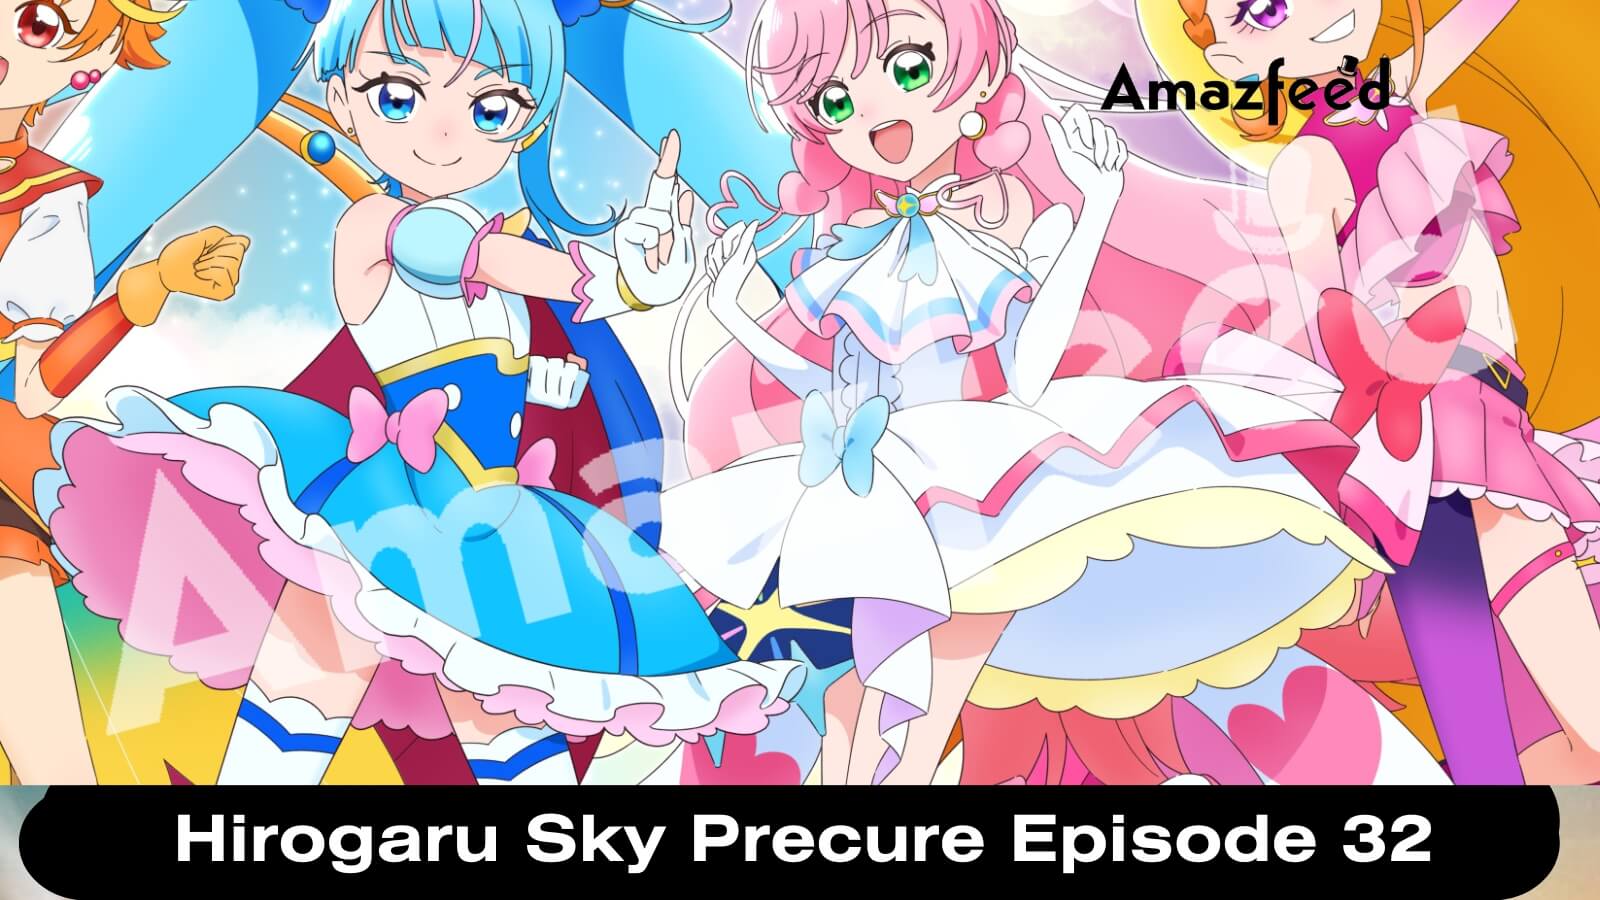 Hirogaru sky precure episode 5 review